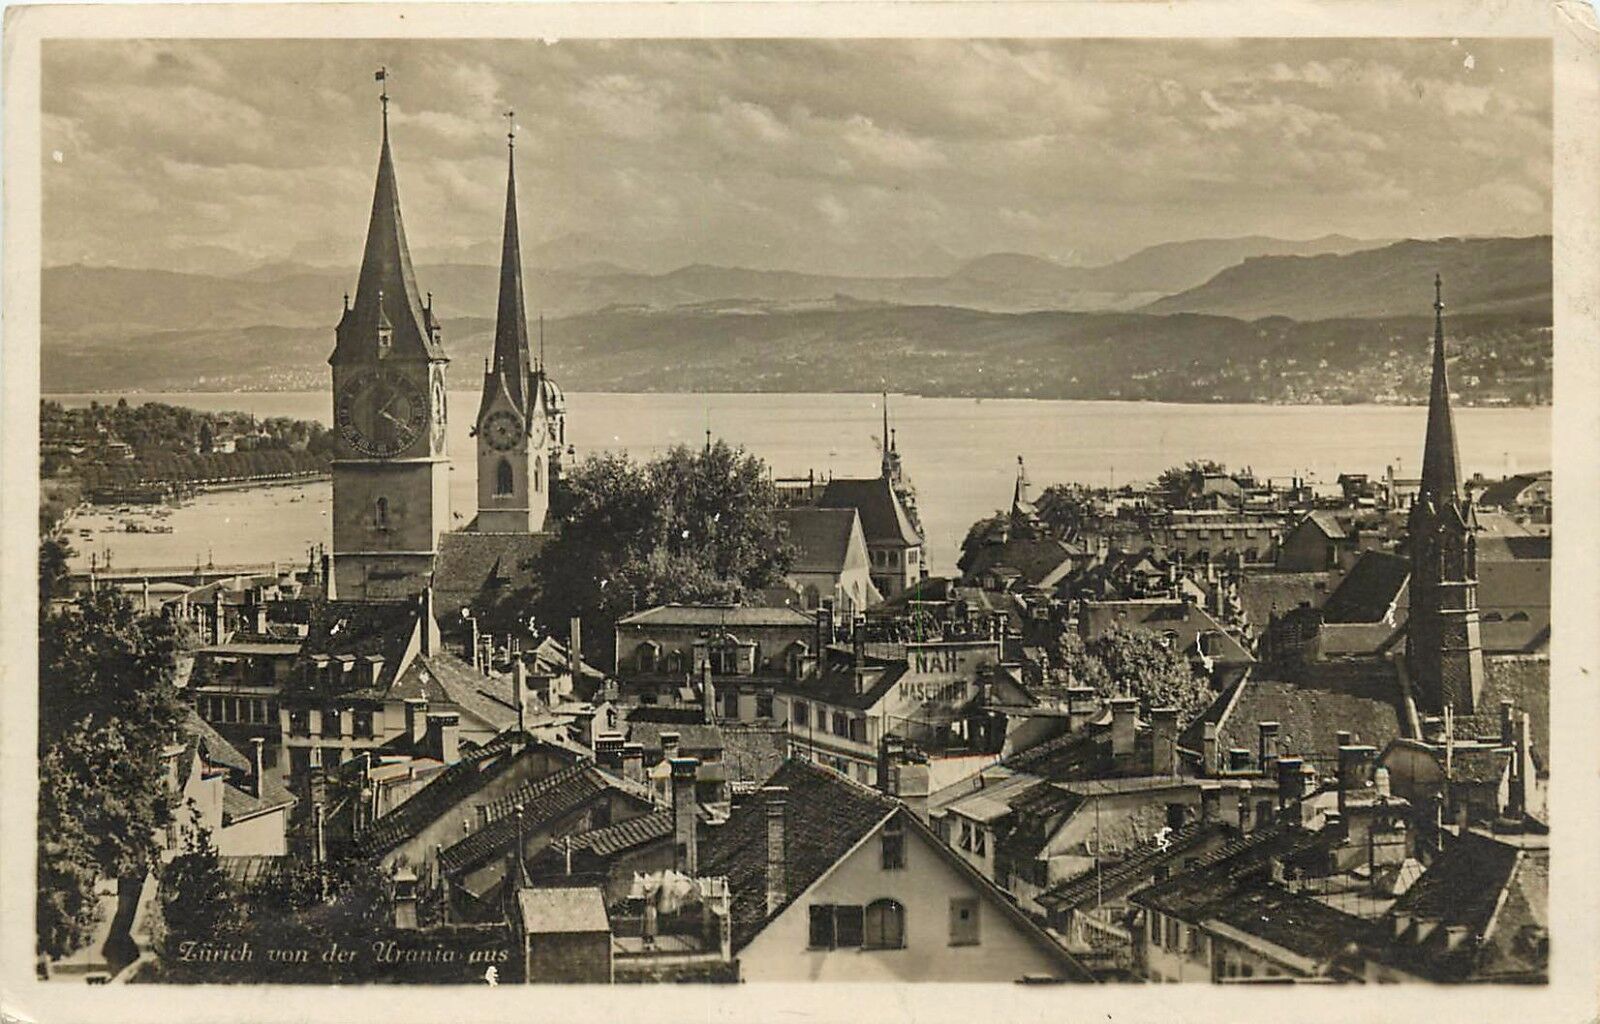 ZURICH VON DER URANIA AUS SWITZERLAND RPPC Postcard pm 1932